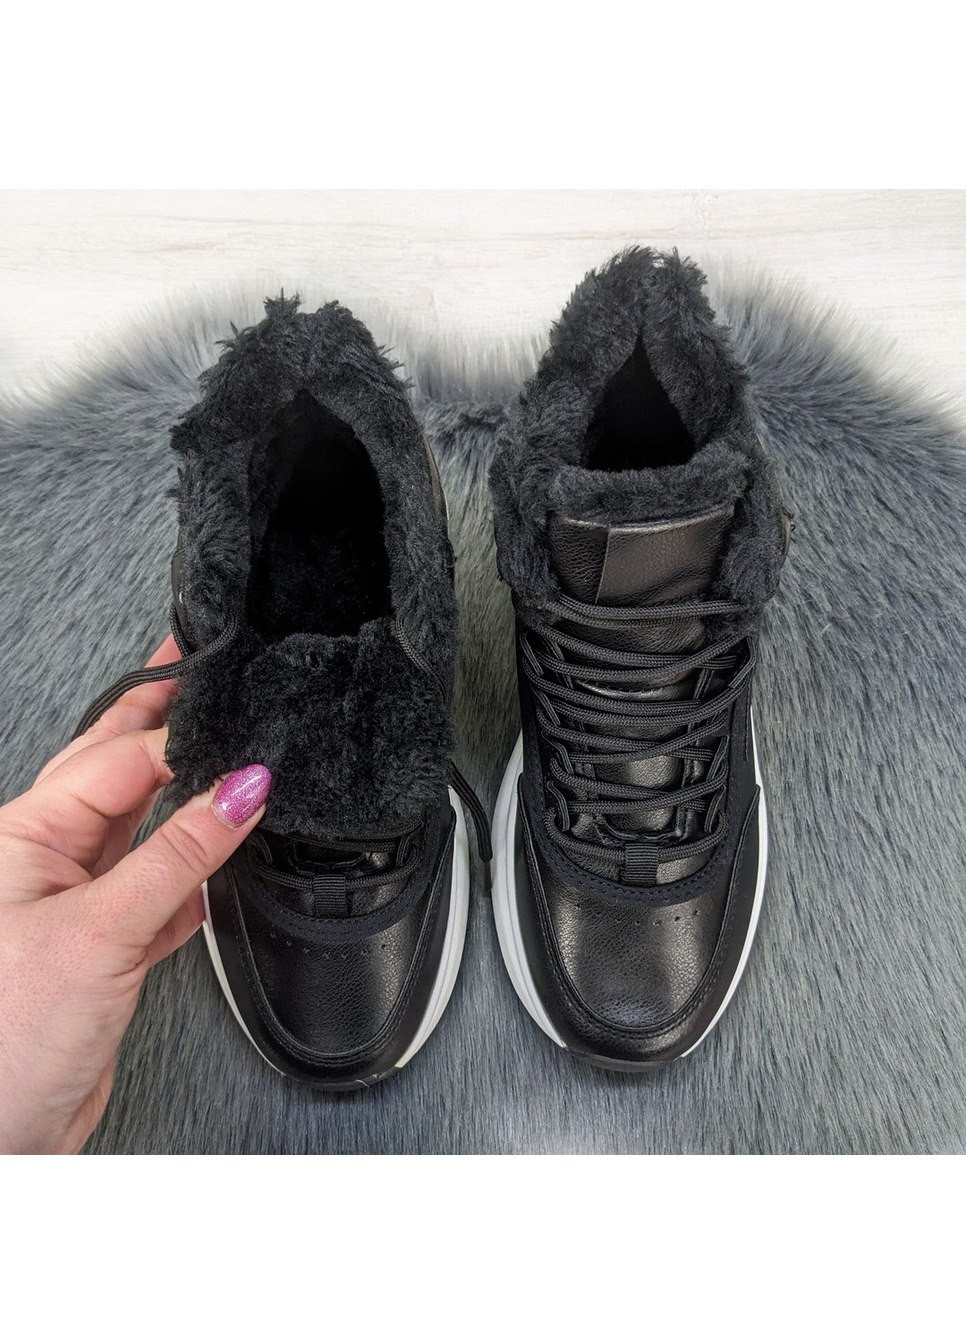 Зимние ботинки женские зимние спортивного типа Dual из искусственной кожи